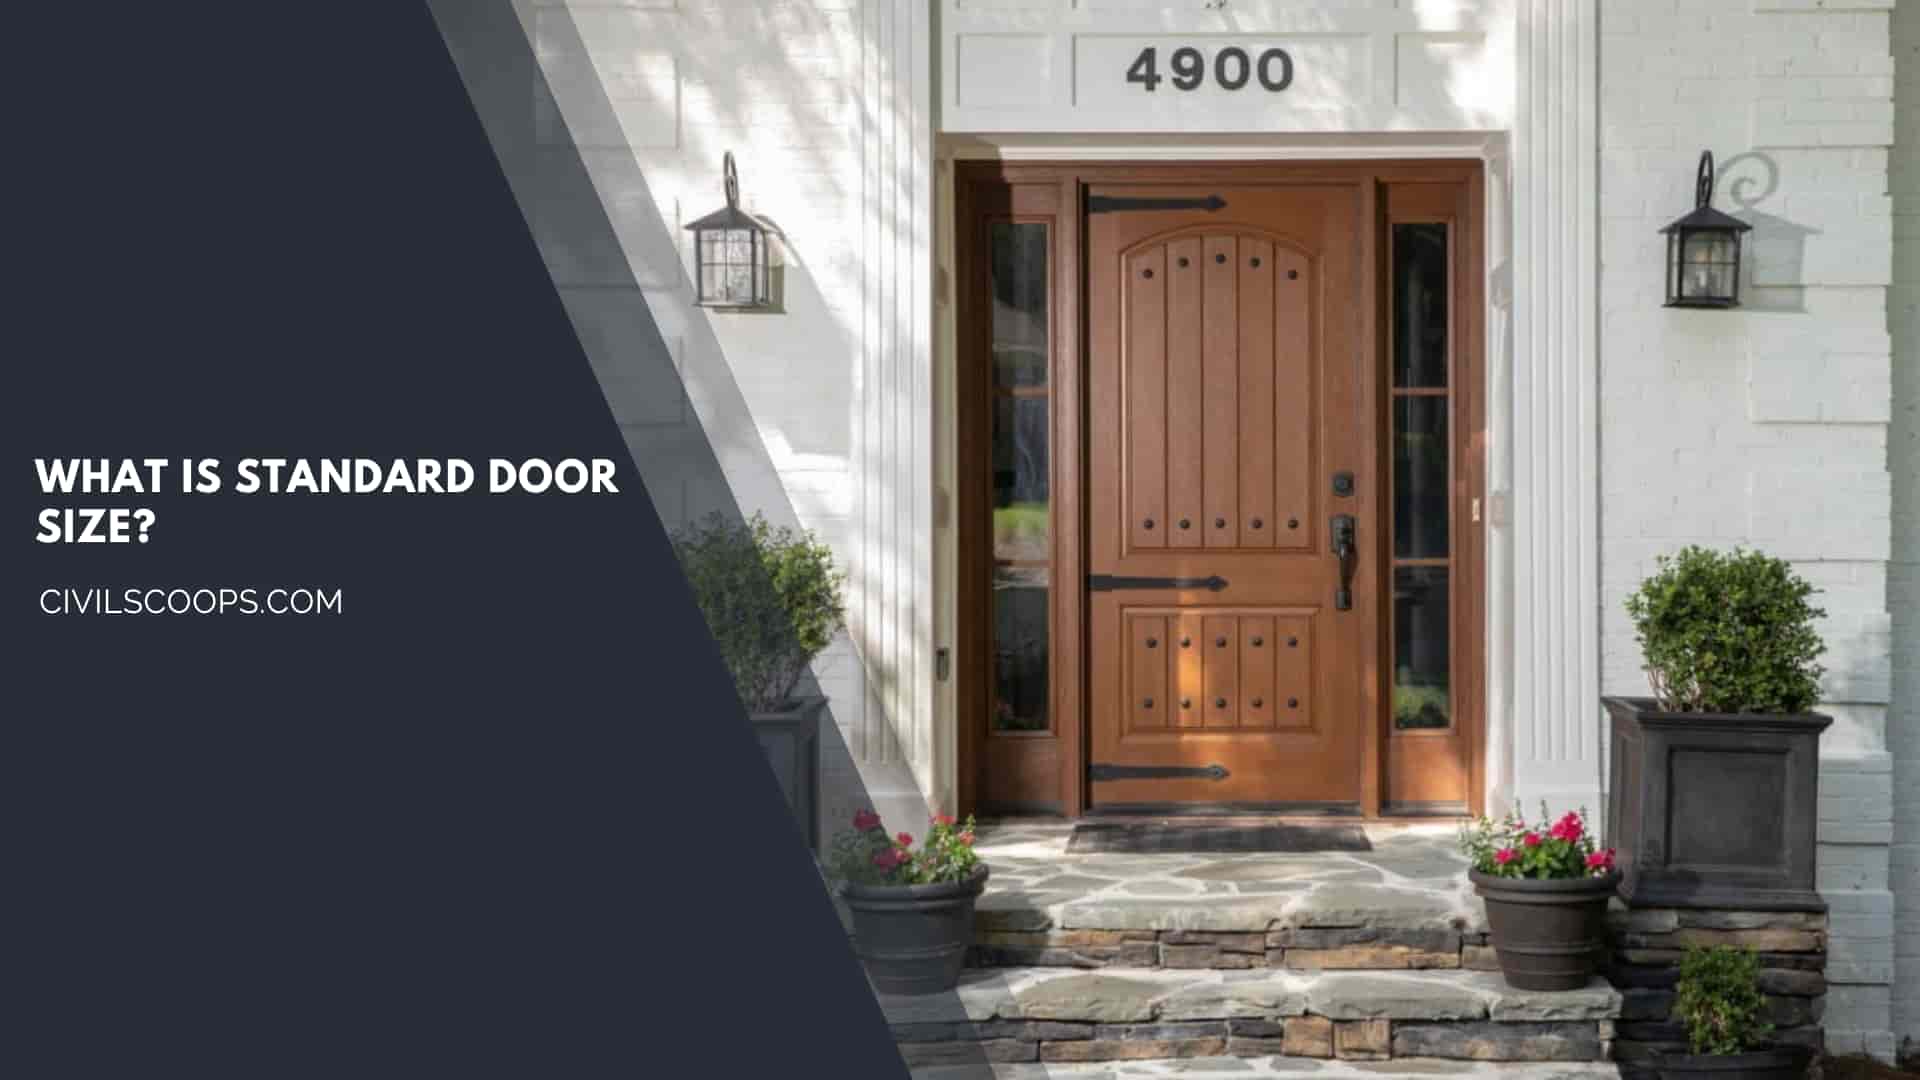 What Is Standard Door Size?